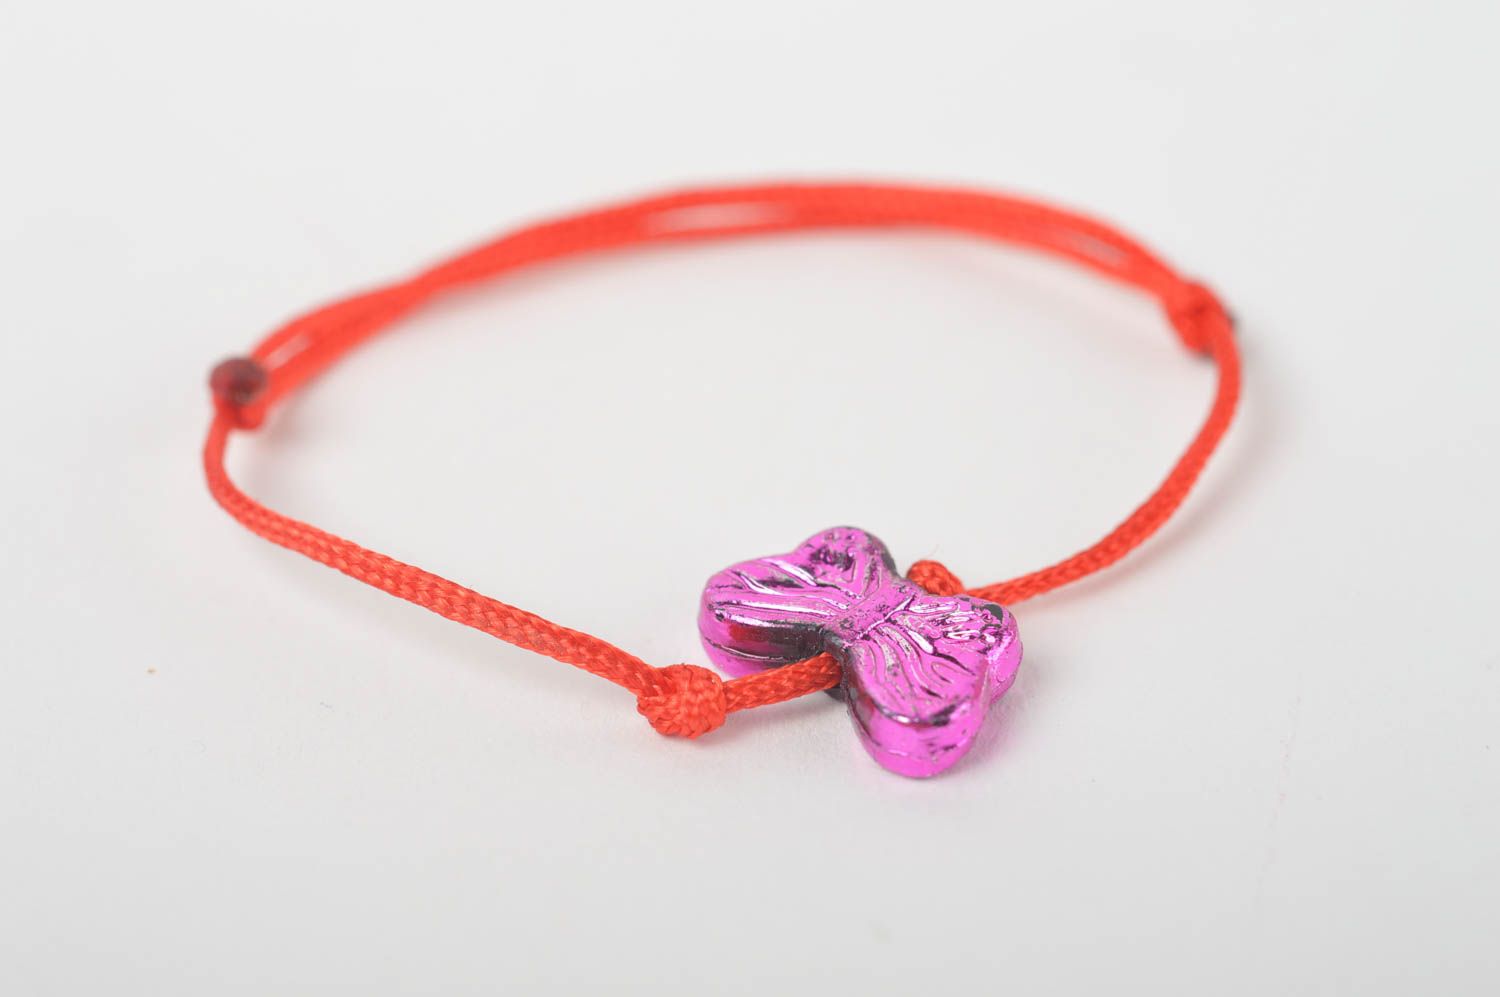 Textil Armband handgemacht Mode Schmuck in Rot wunderschön Geschenk für Mädchen foto 2